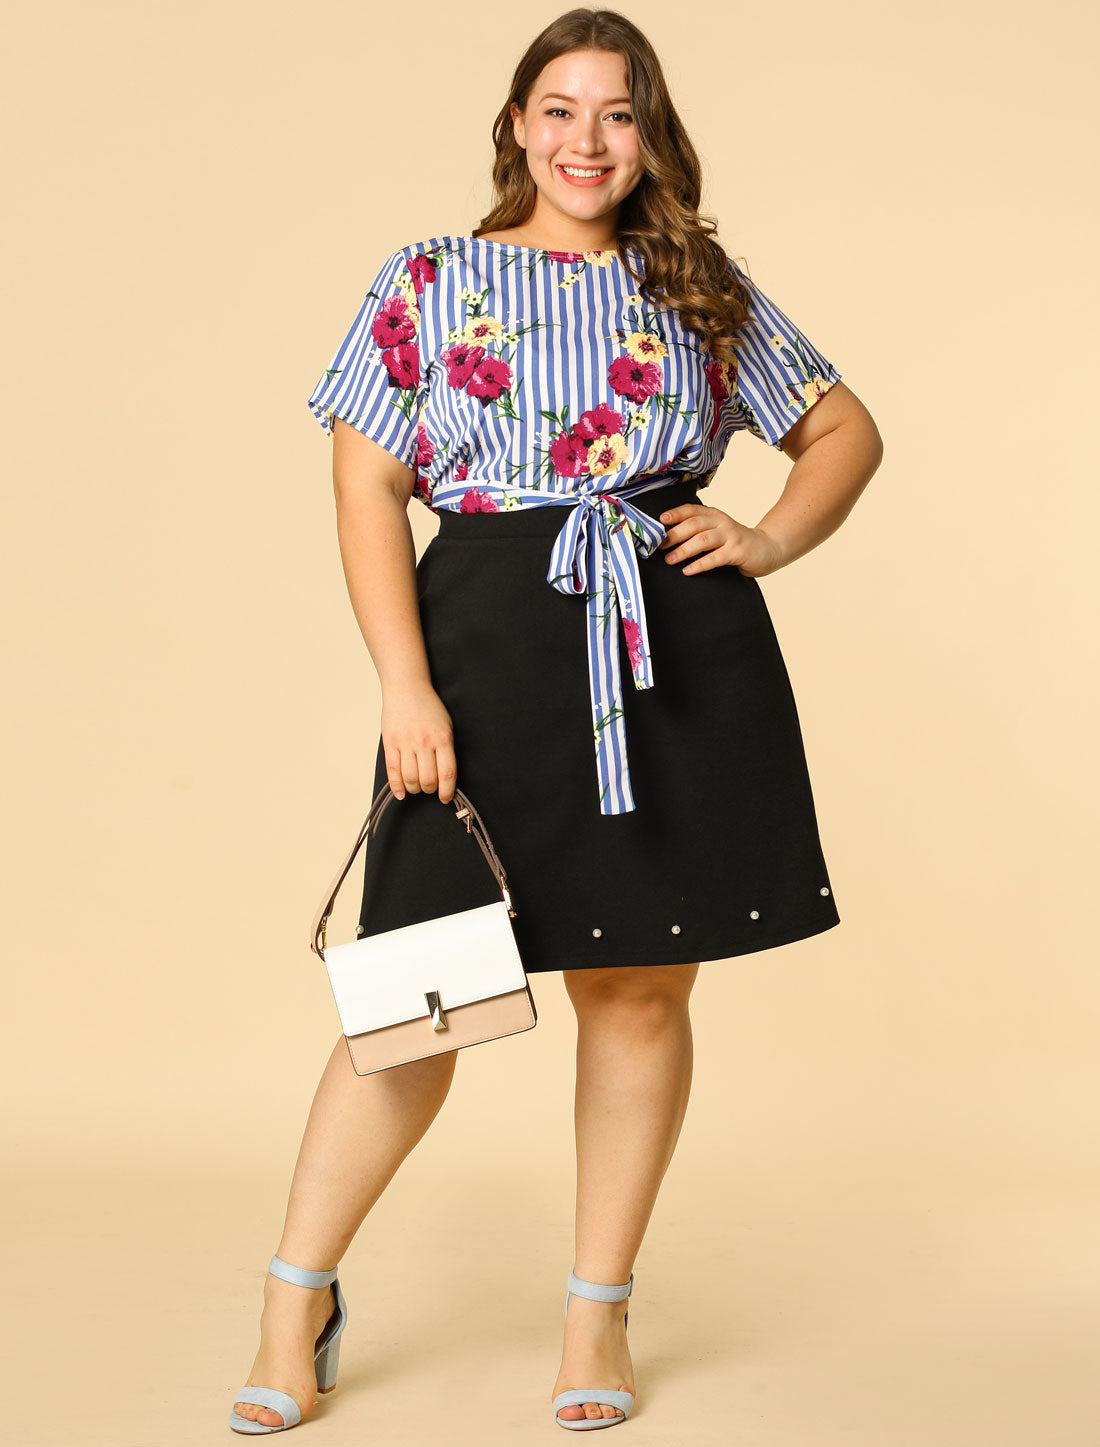 Bublédon Women's Plus Size Floral Blouse Tie Waist Summer Casual Stripe Top